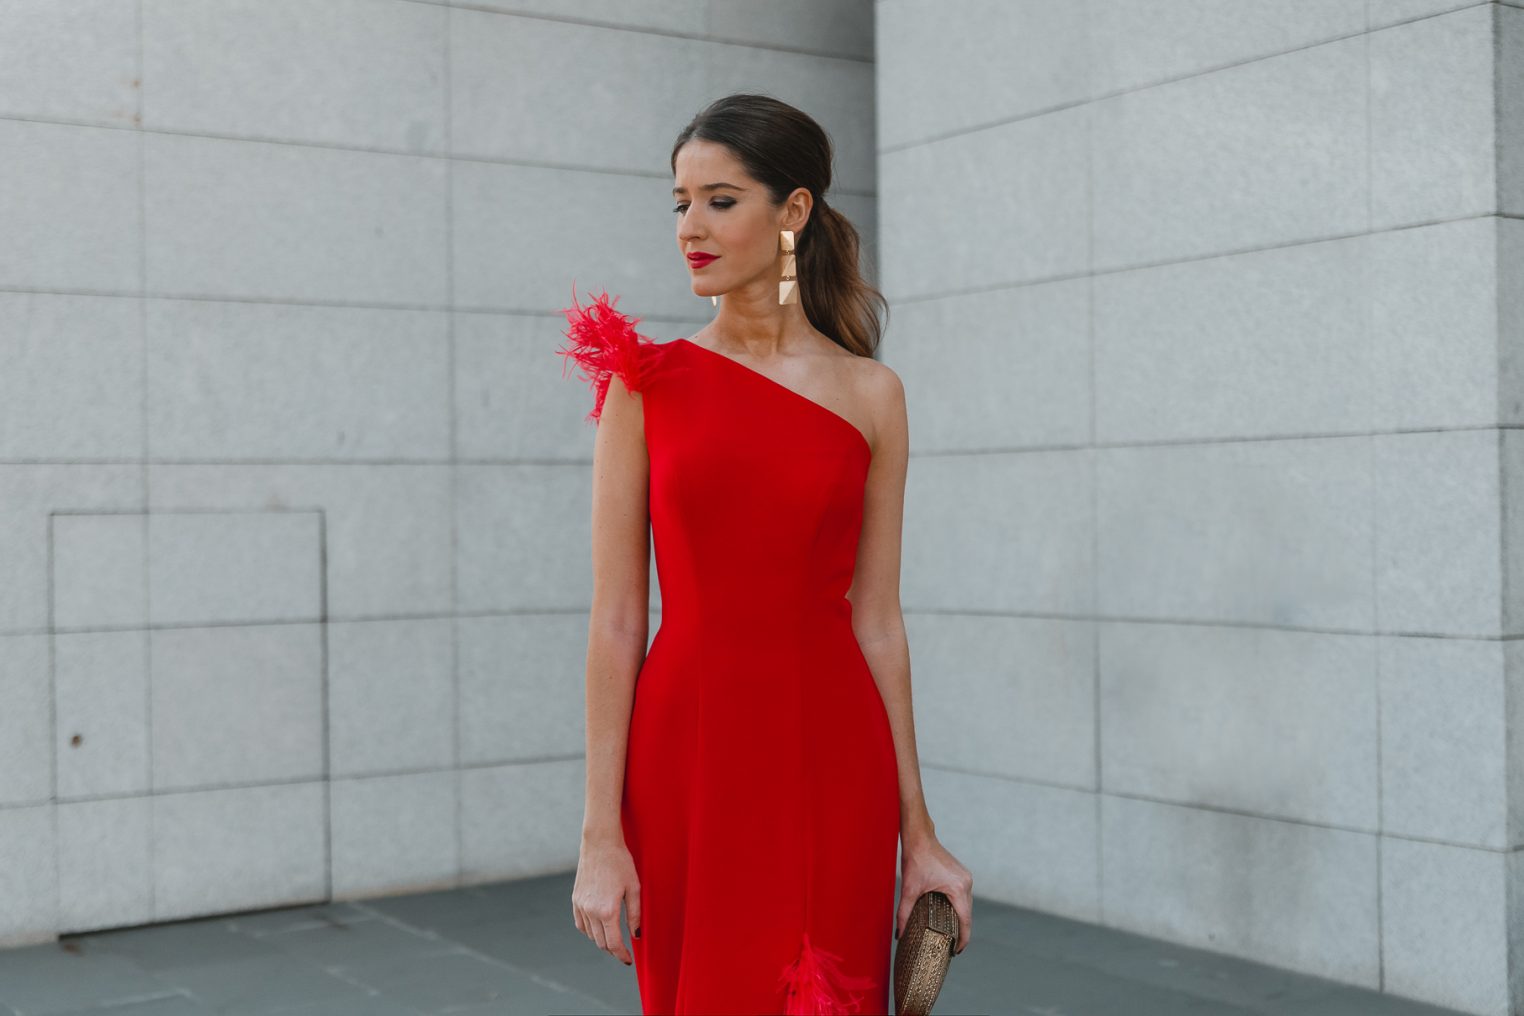 Look invitada de noche: el vestido rojo de plumas | Invitada Perfecta